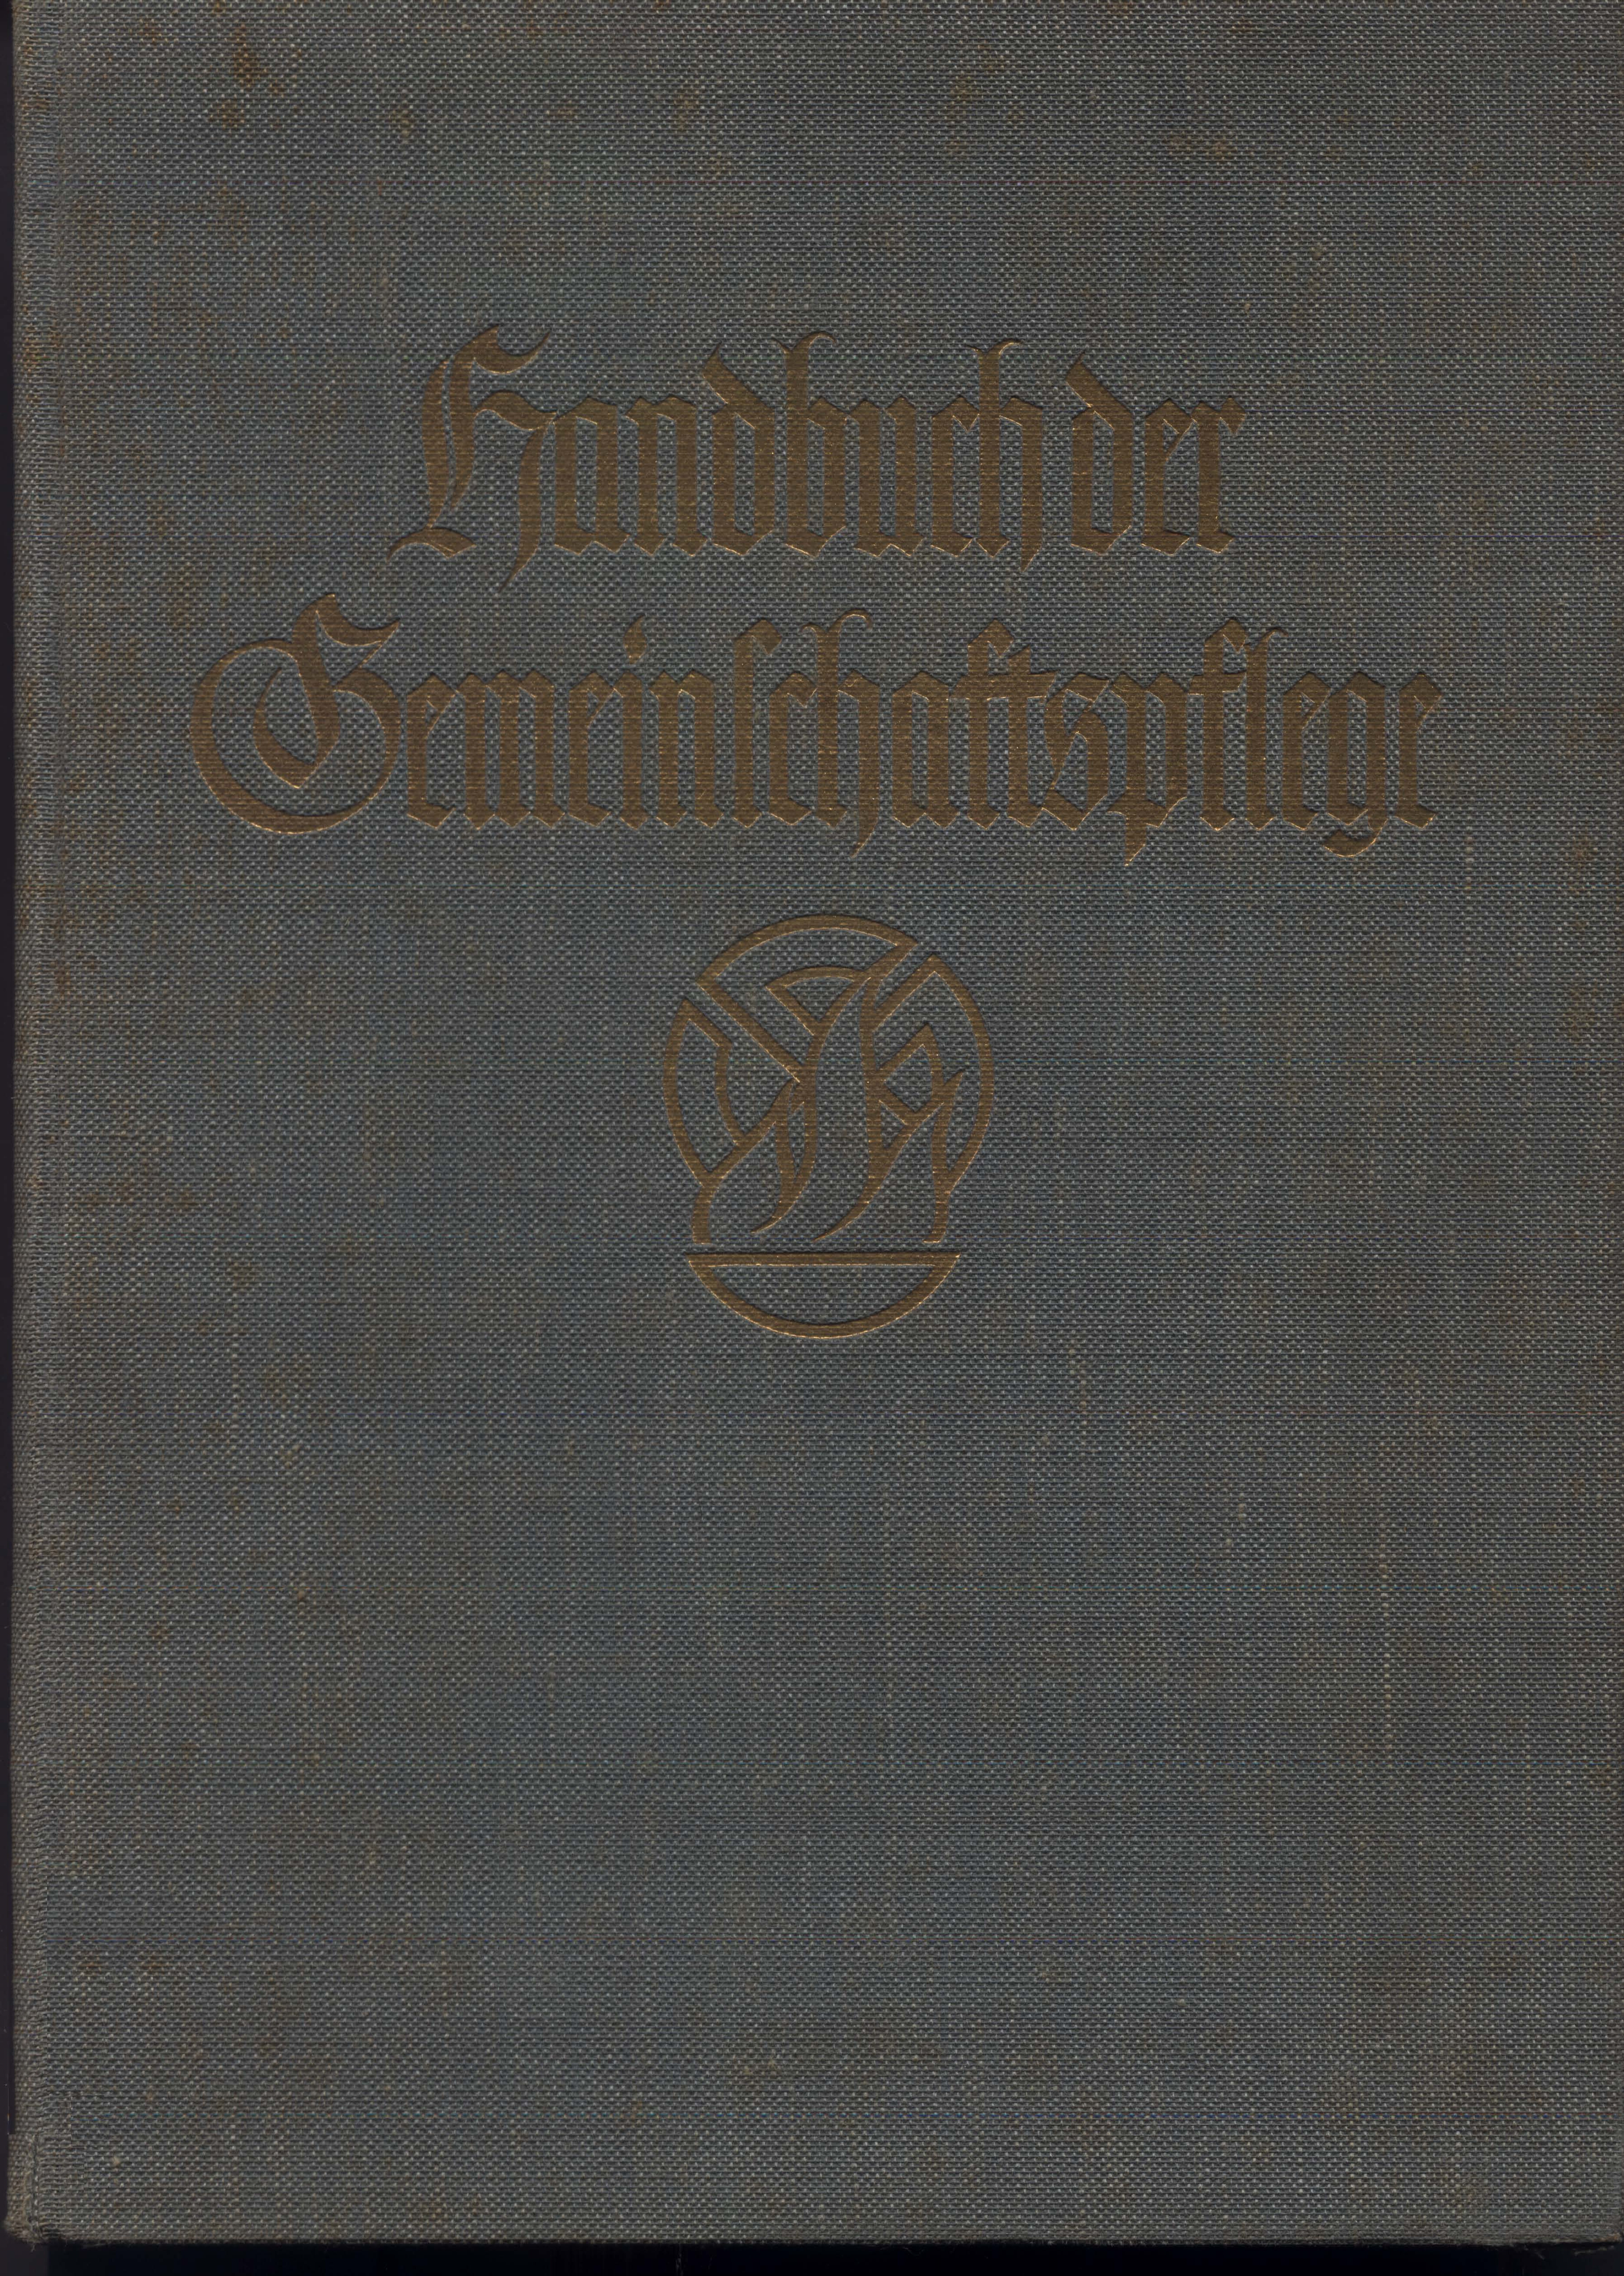 Handbuch der Gemeinschaftspflege (1939, 185 S., Scan, Fraktur)